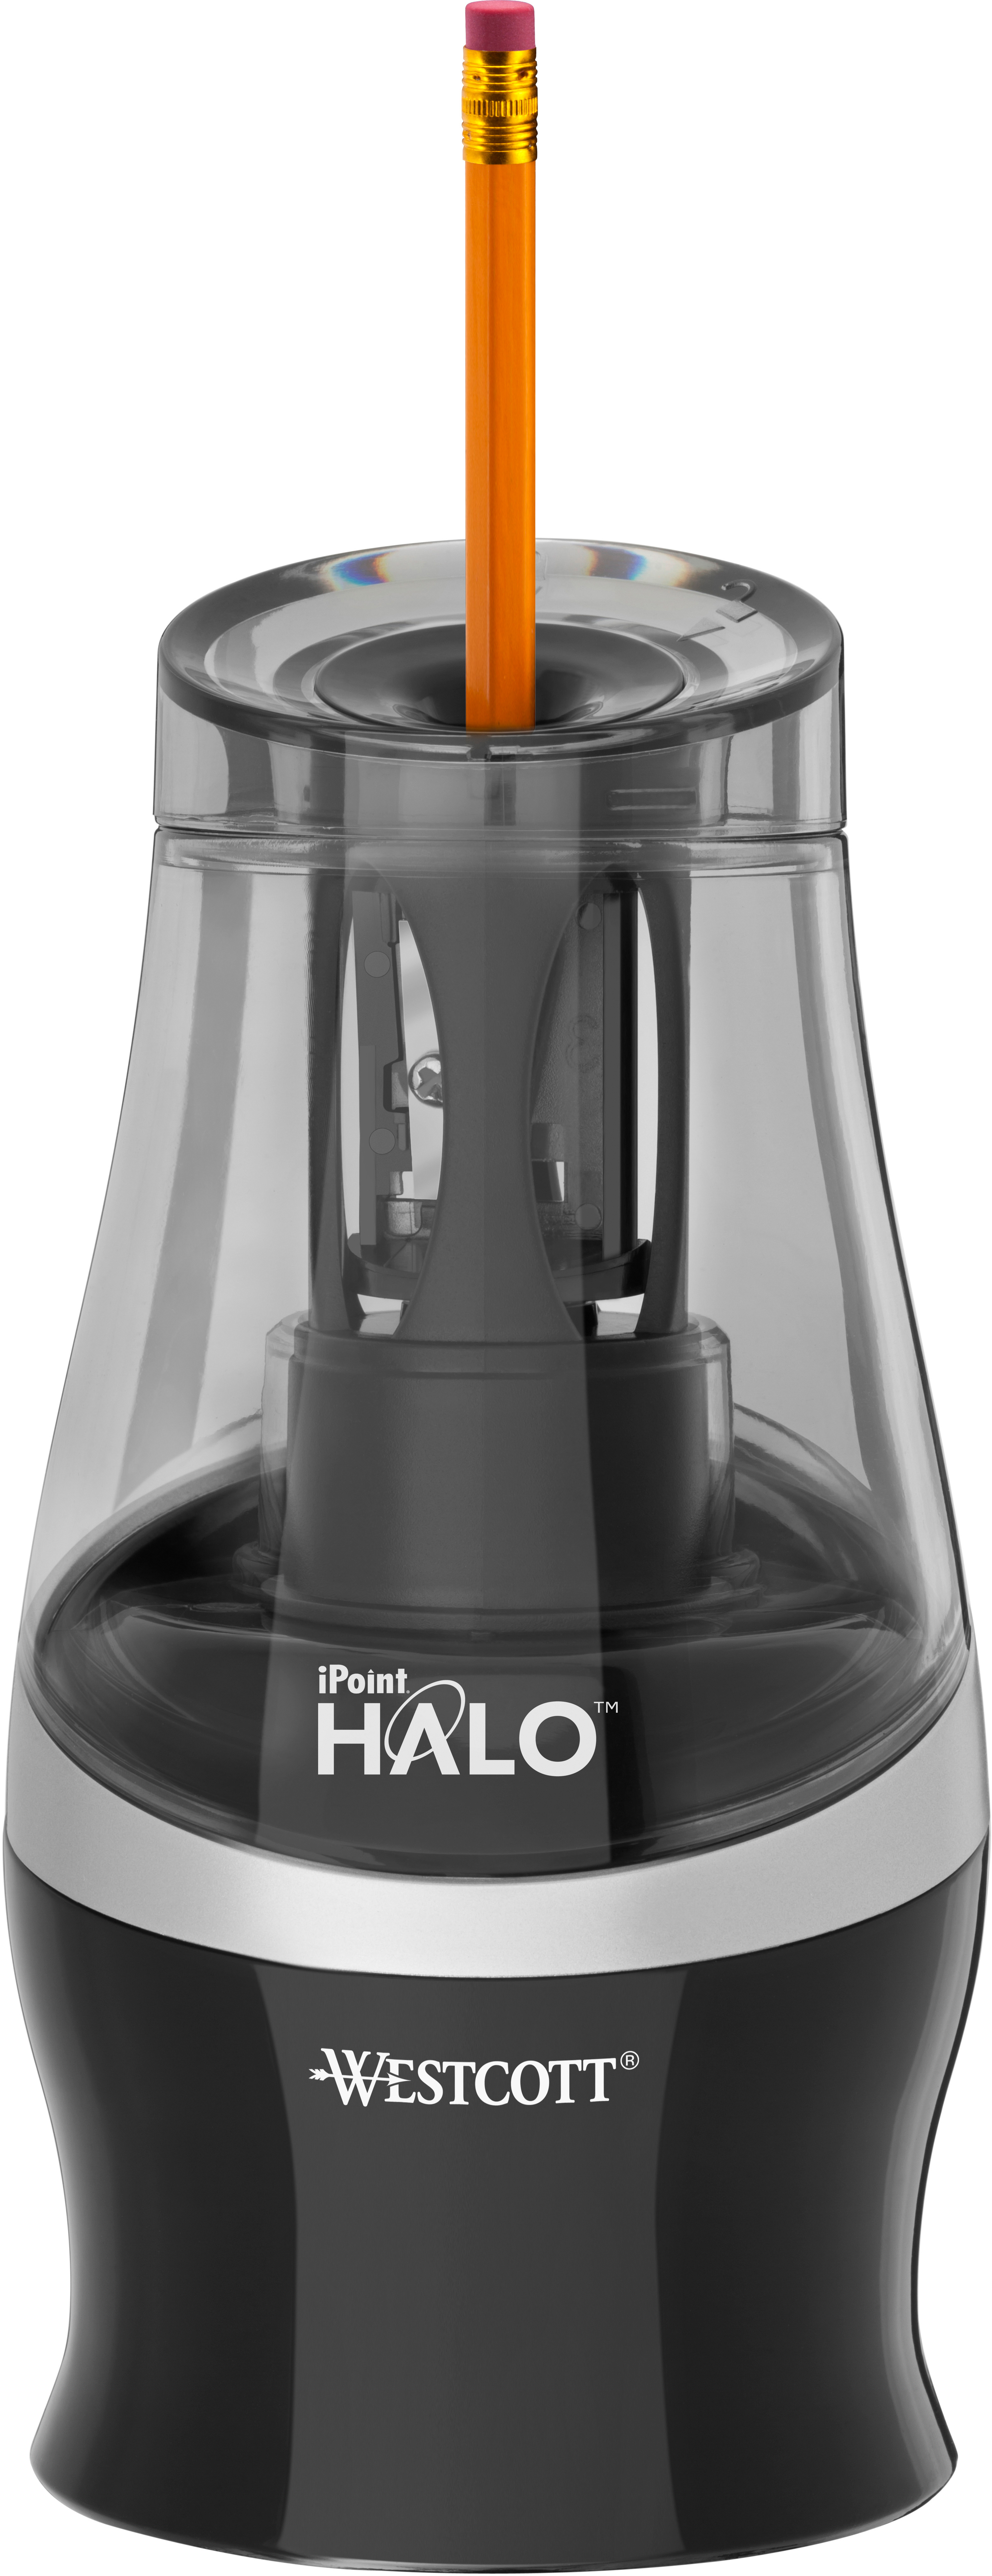 WESTCOTT Taille-crayon iPoint Halo E-55050 00 noir électronique noir électronique